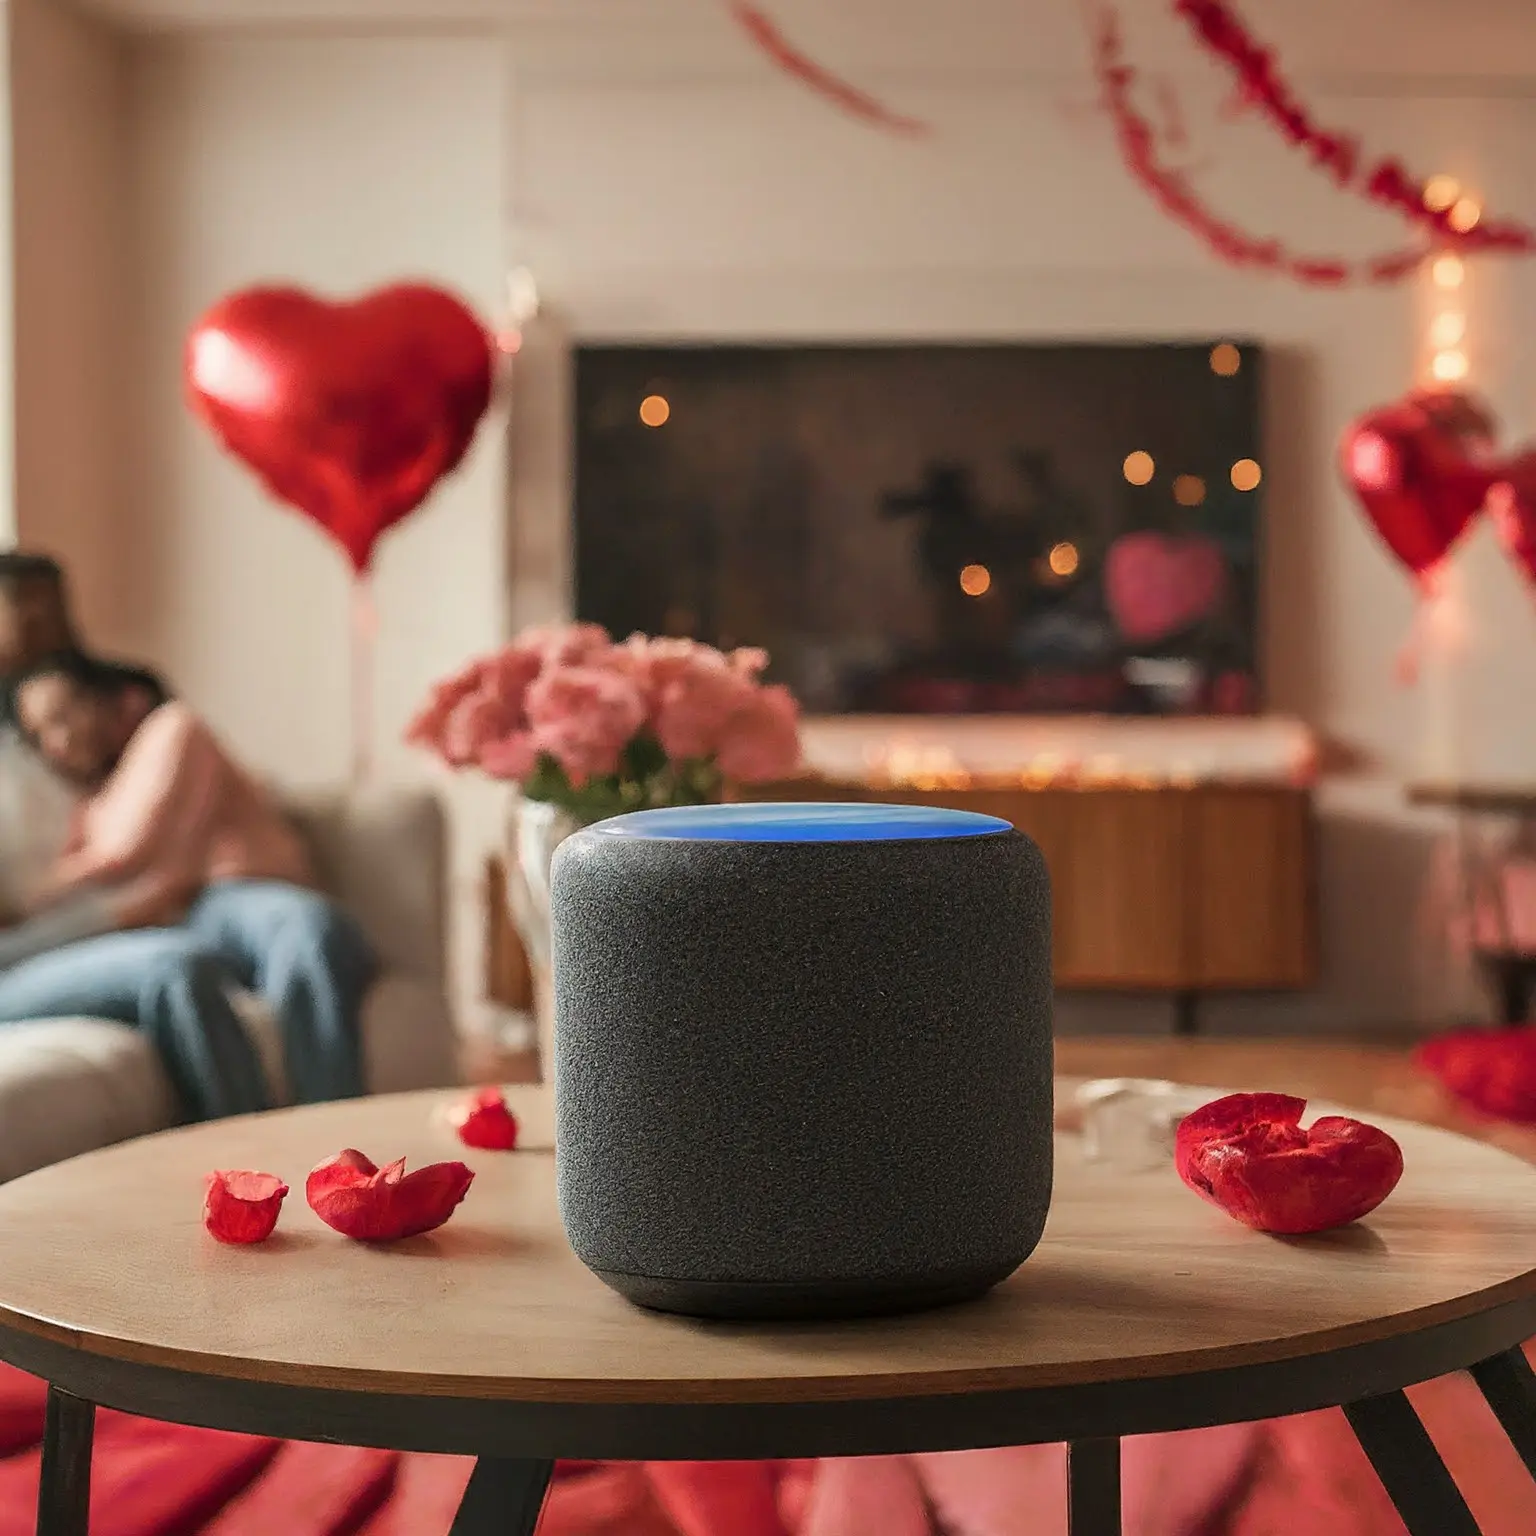 Mejora tu día de San Valentín: obtén Amazon Echo Studio en oferta y regala Smart Love